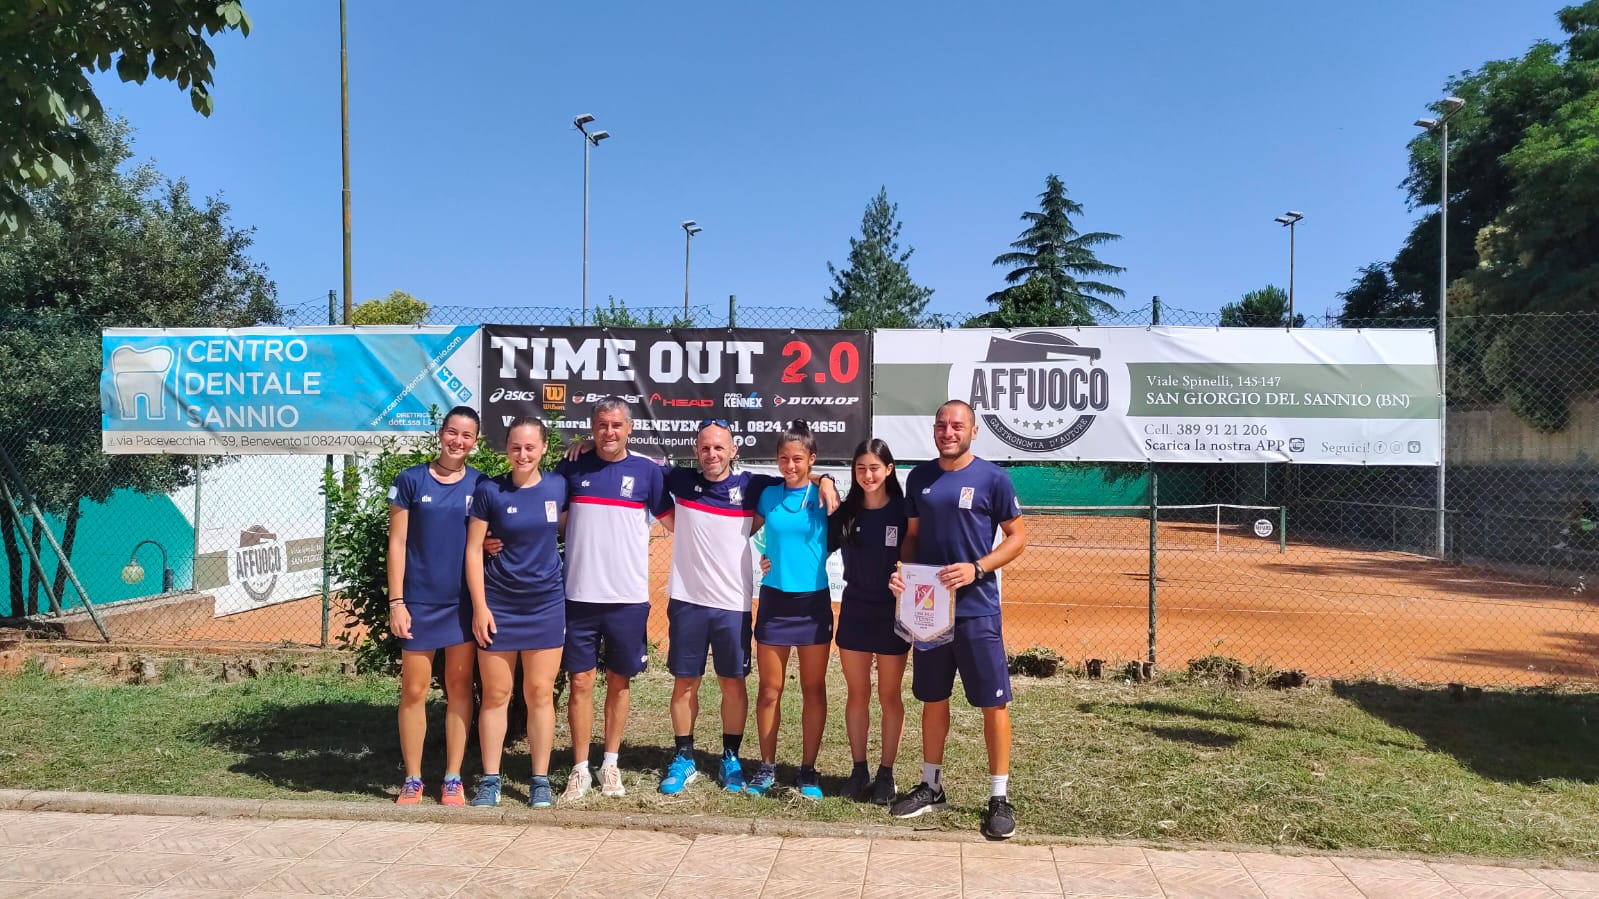 Tennis, finali nazionali di Serie C femminile: il CT San Giorgio conquista l’andata, domenica il ritorno in Abruzzo